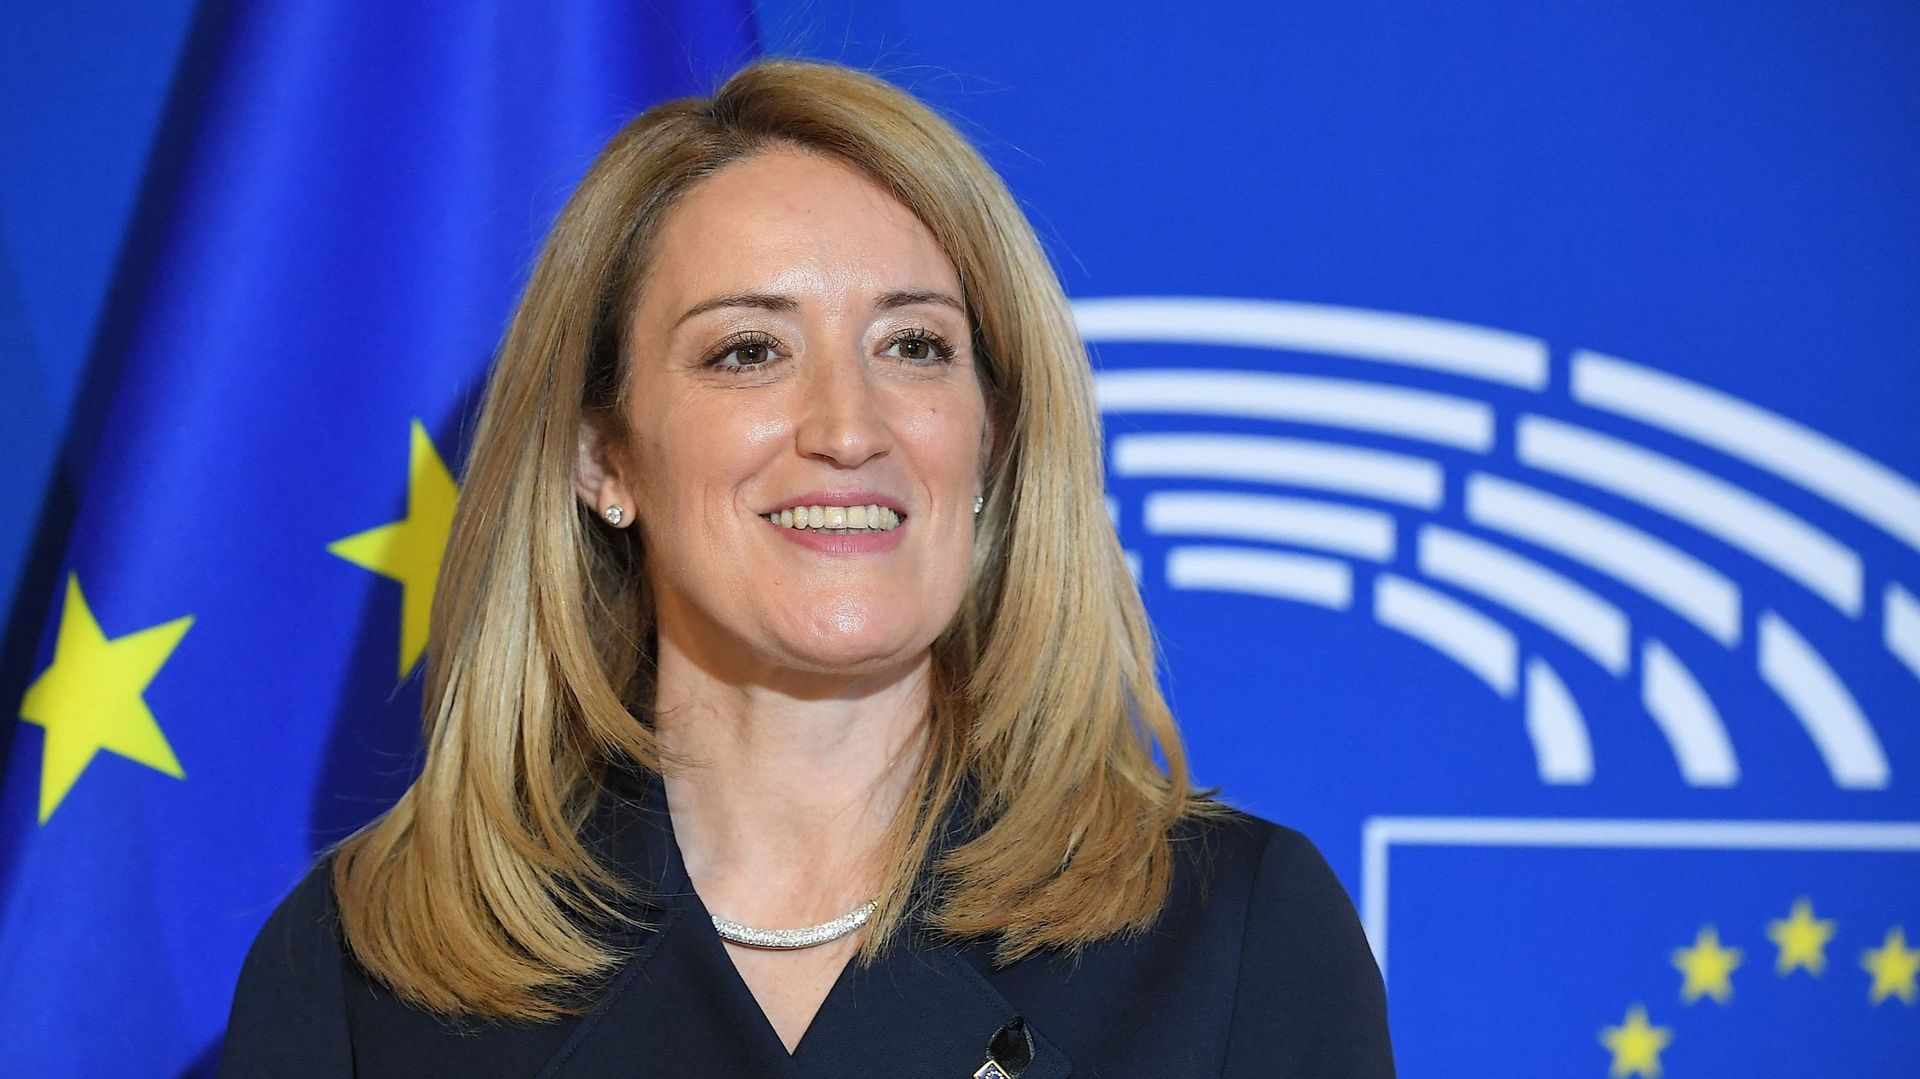 La conservatrice maltaise Roberta Metsola est élue présidente du Parlement européen